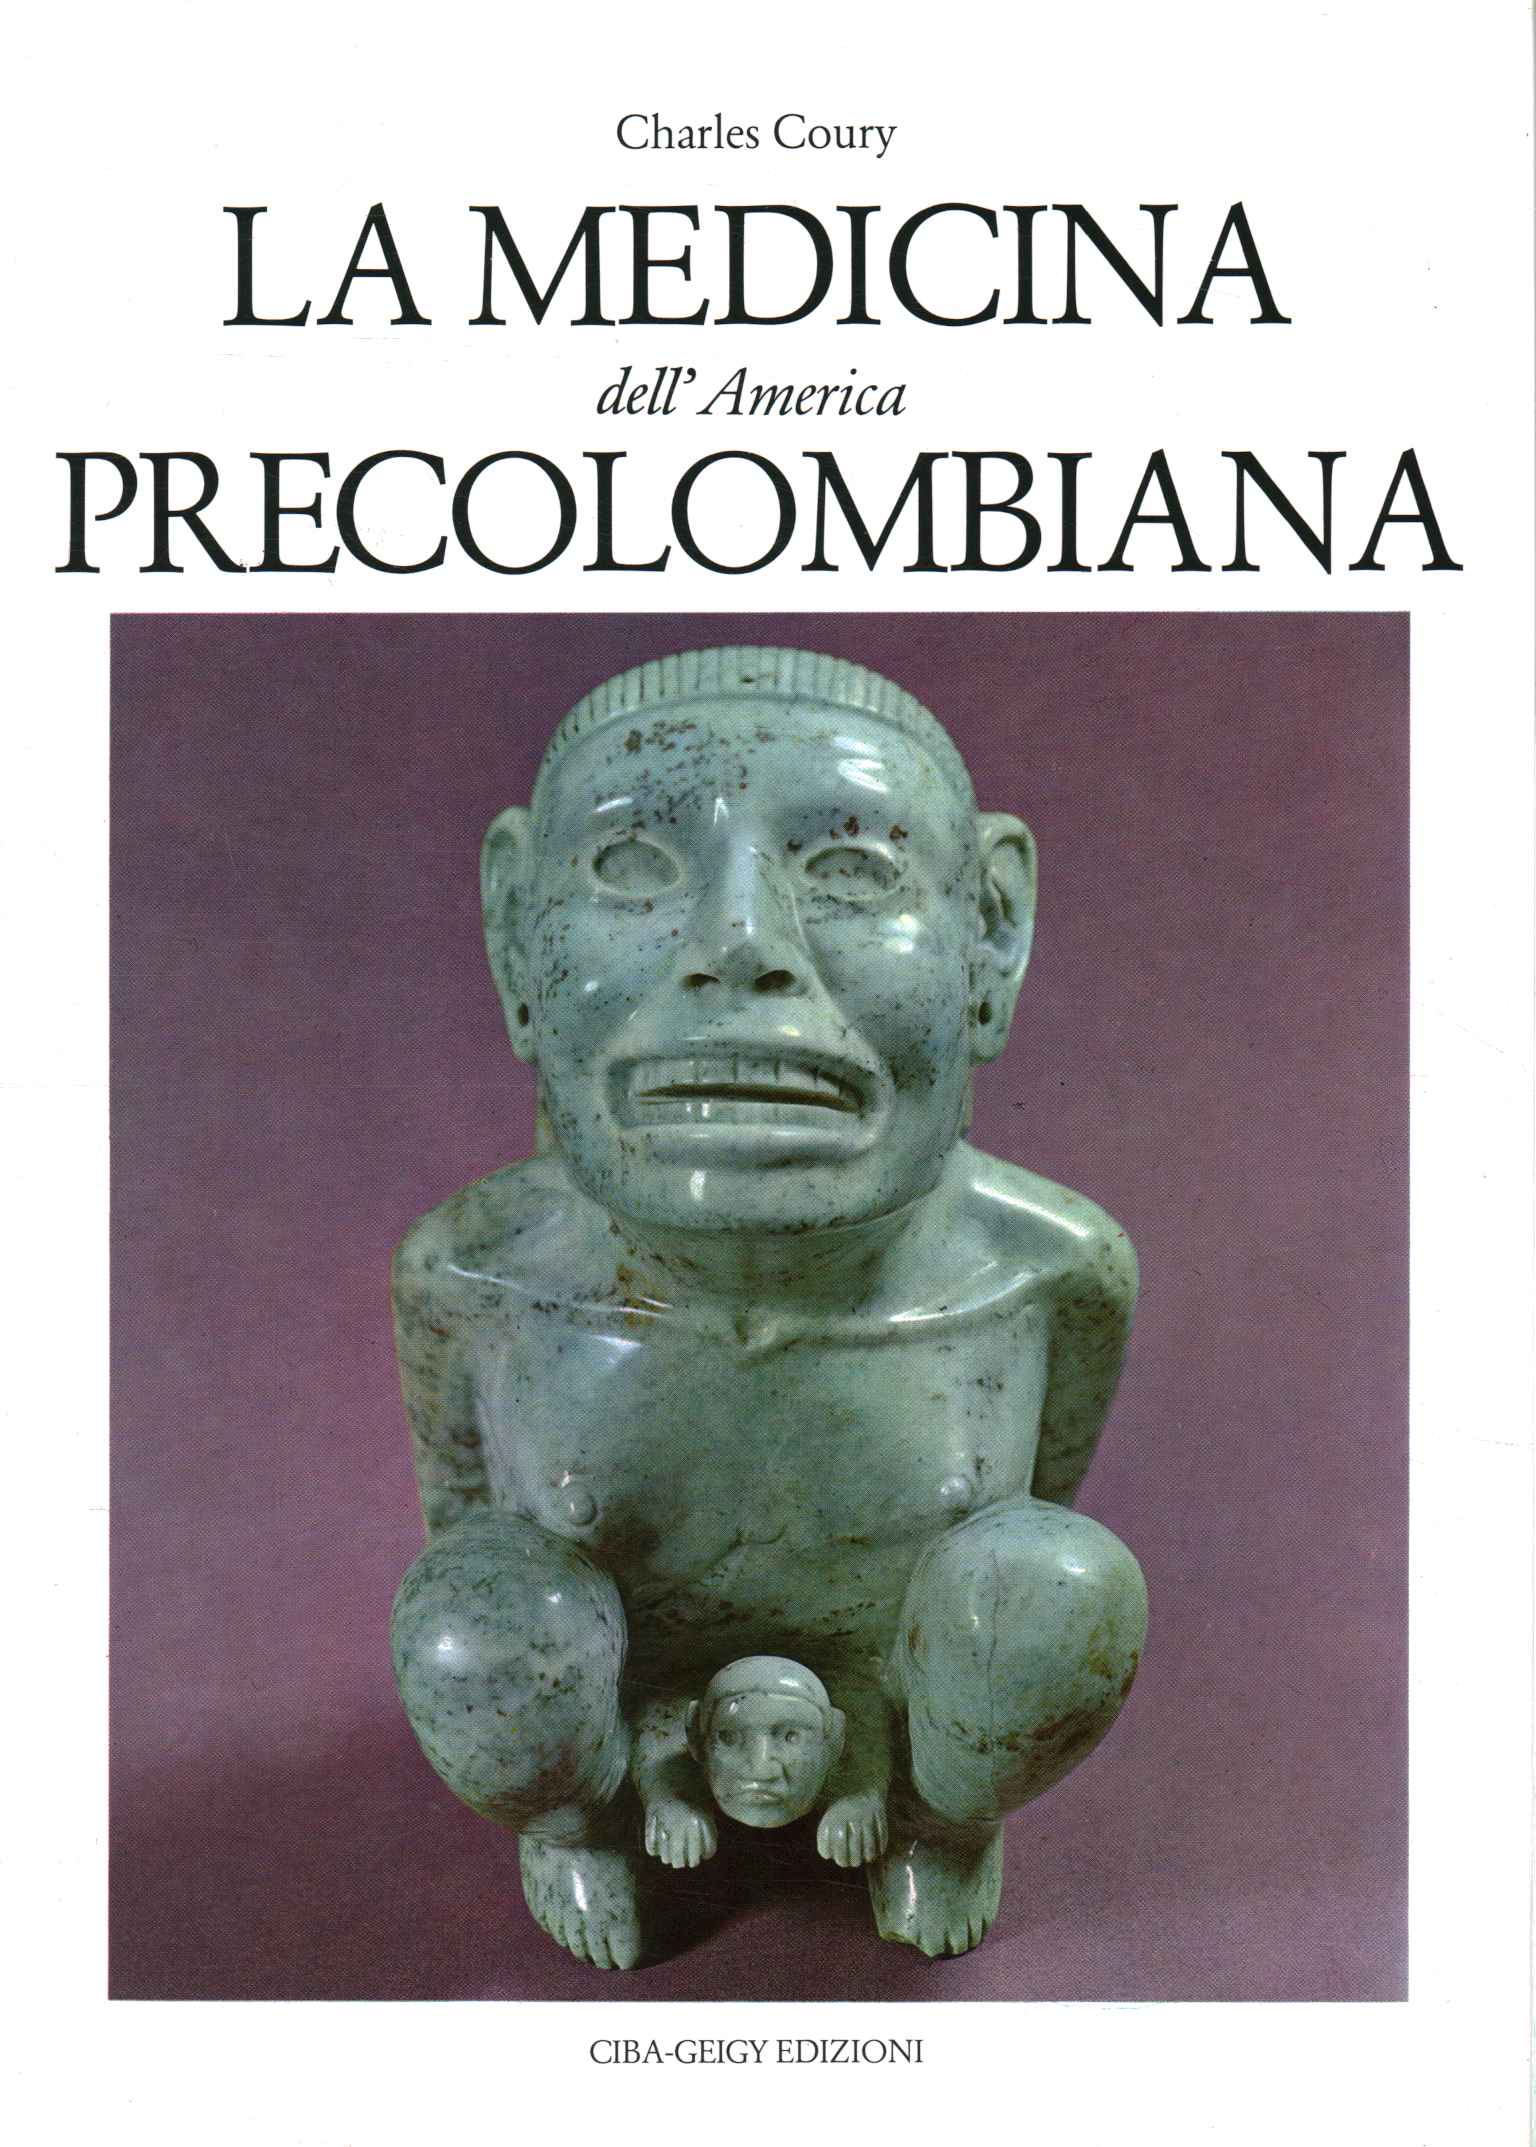 The medicine of Pre-Columbian America